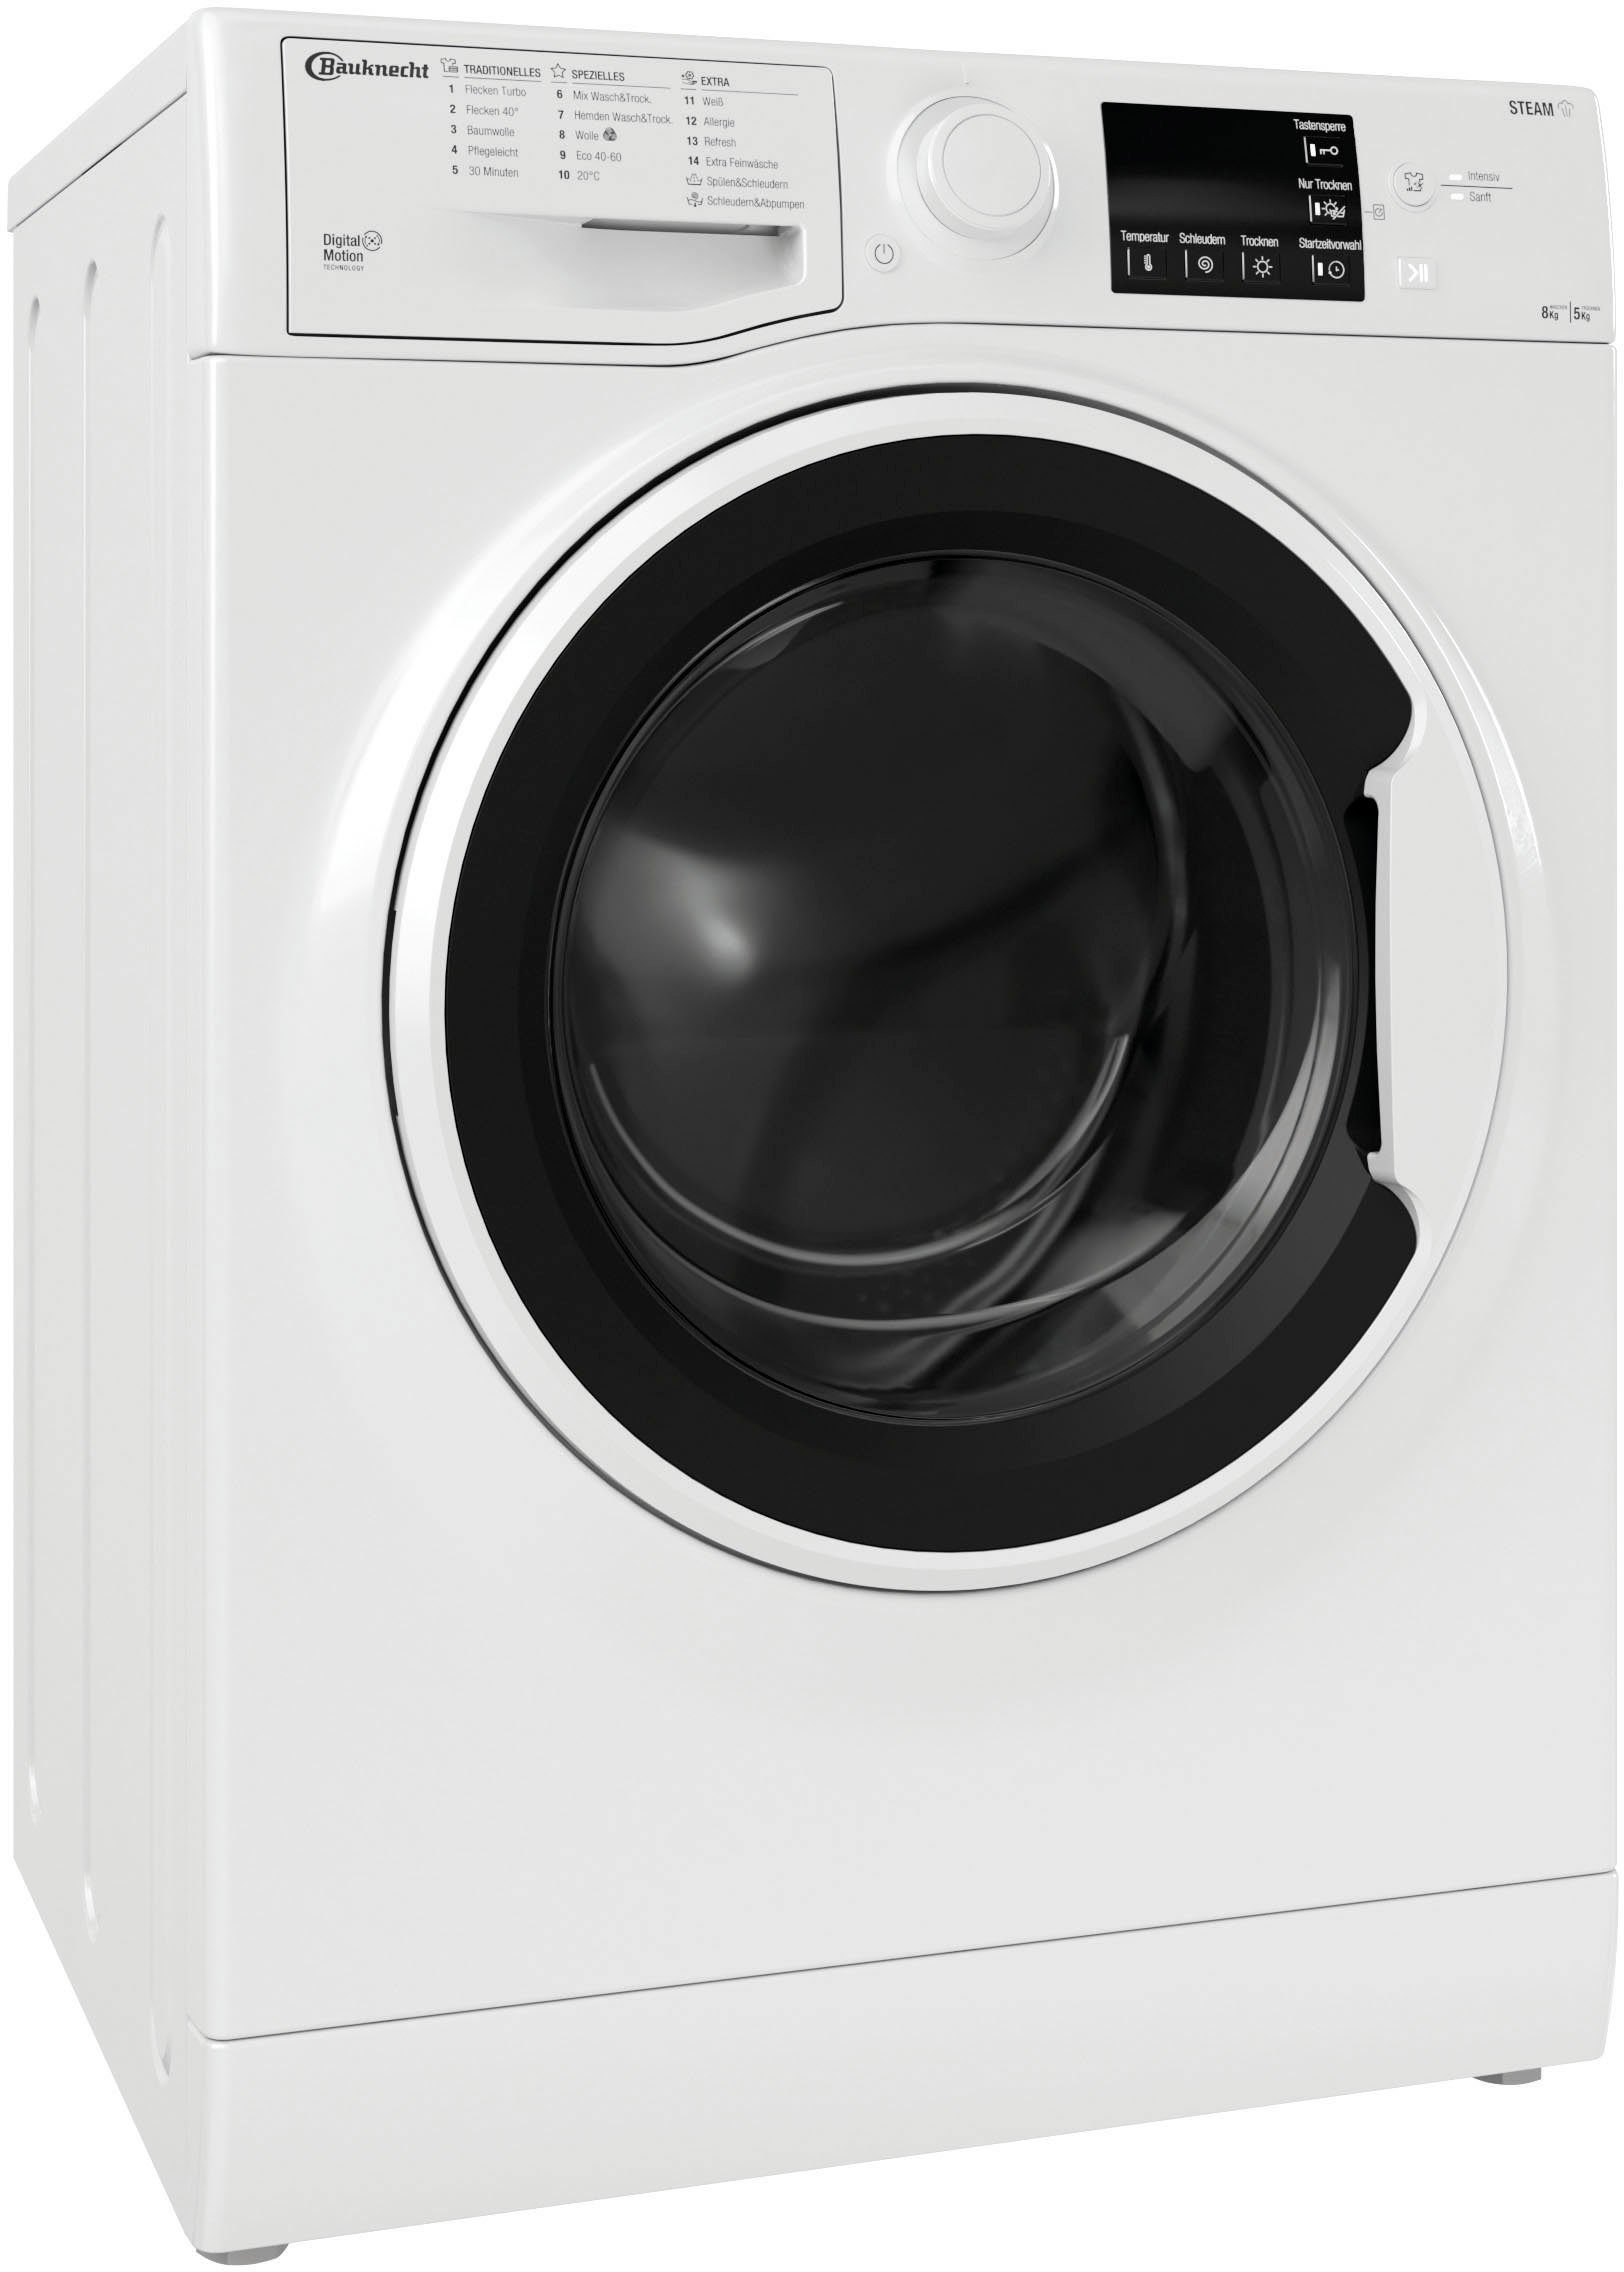 BAUKNECHT Waschtrockner WT Super Eco 8514 N, 8 kg, 5 kg, 1400 U/min online  kaufen | OTTO